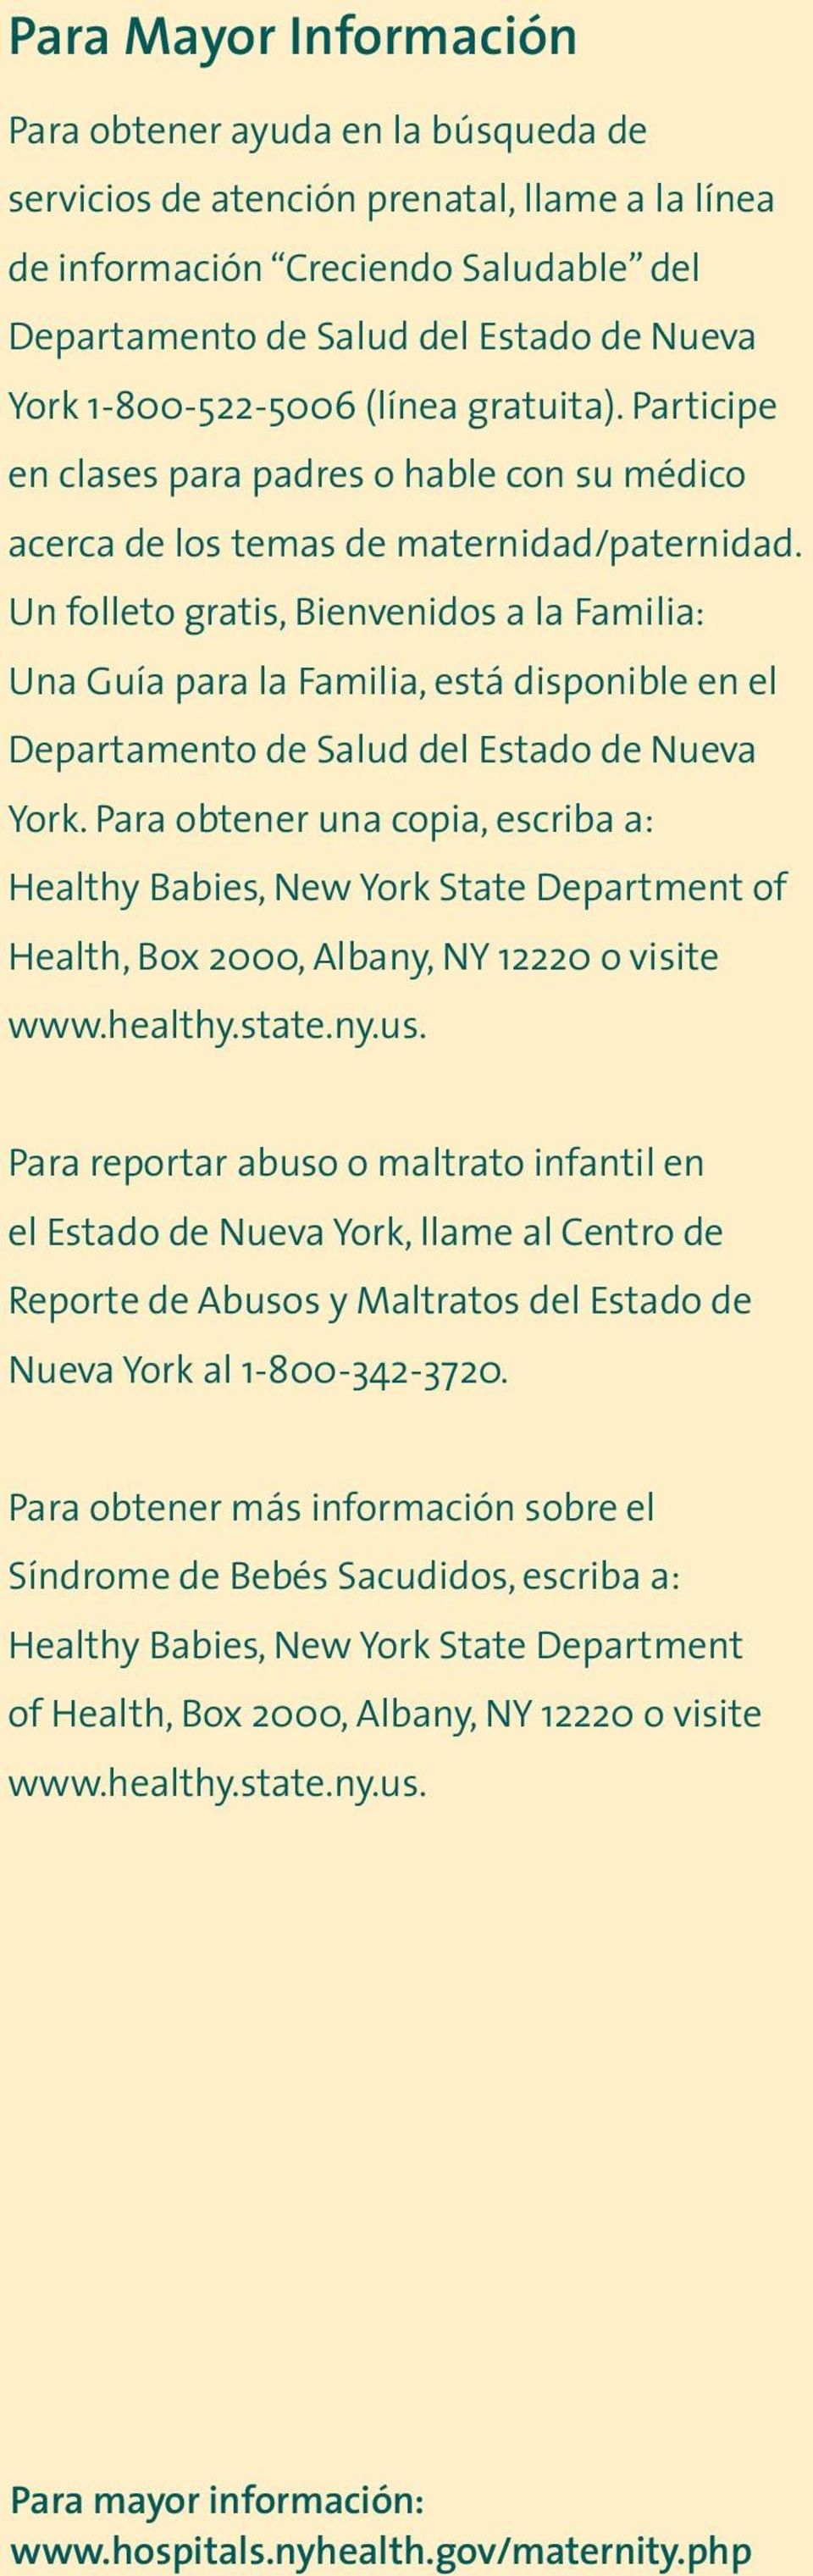 Un folleto gratis, Bienvenidos a la Familia: Una Guía para la Familia, está disponible en el Departamento de Salud del Estado de Nueva York.